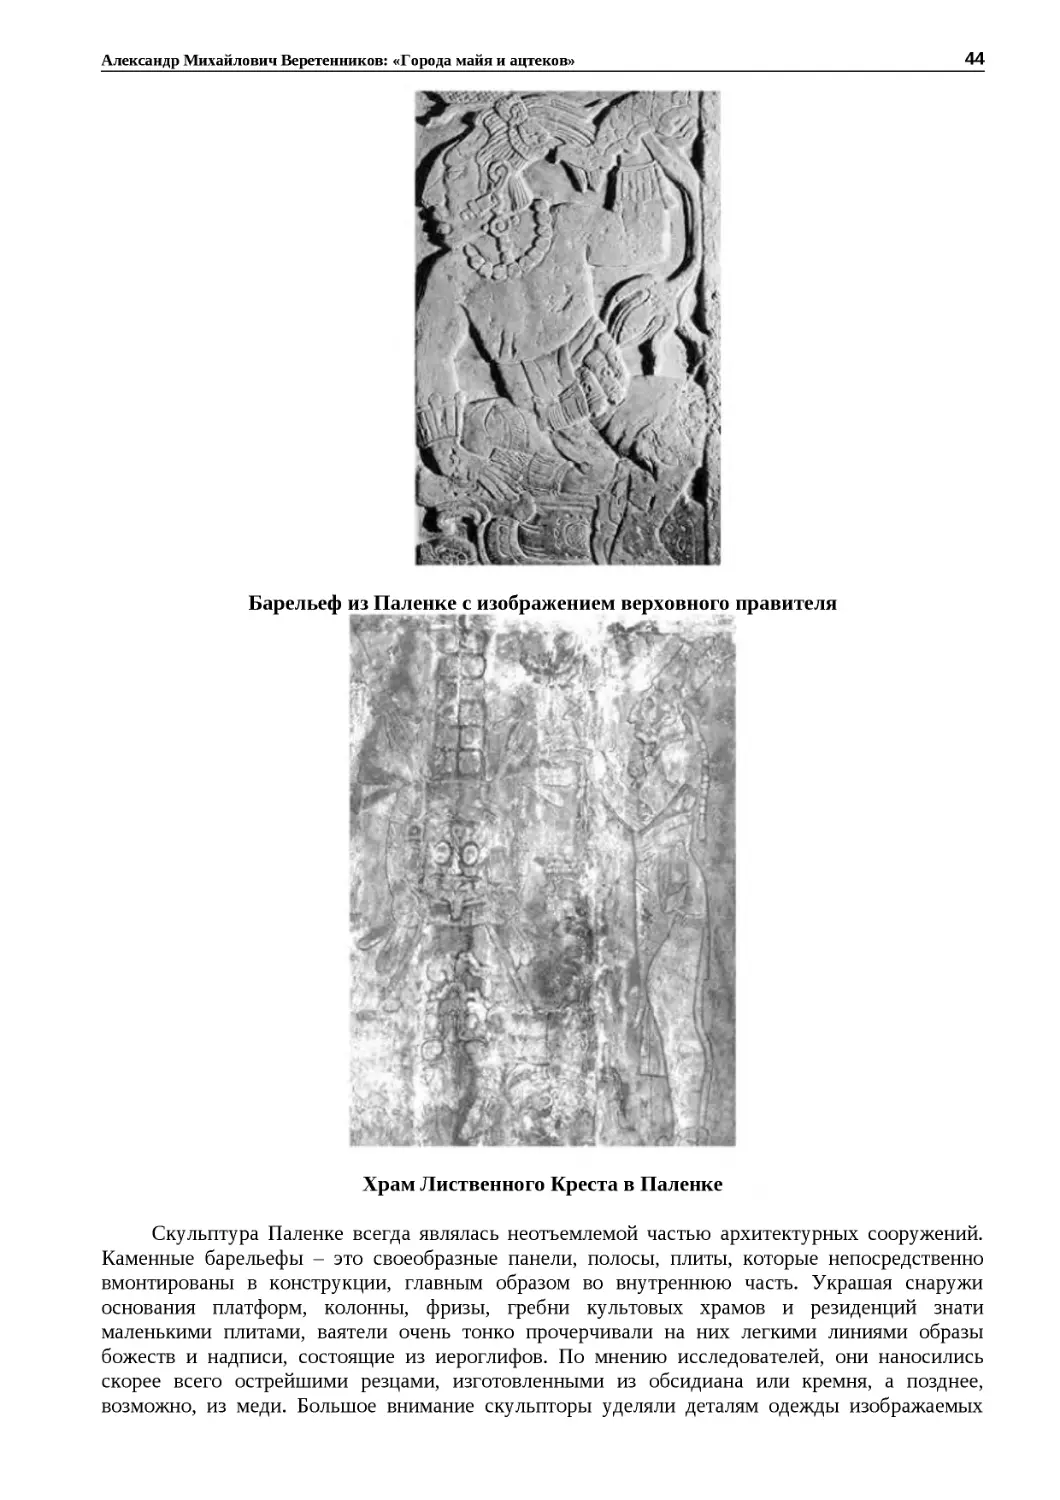 ﻿Барельеф из Паленке с изображением верховного правител
"
﻿Храм Лиственного Креста в Паленк